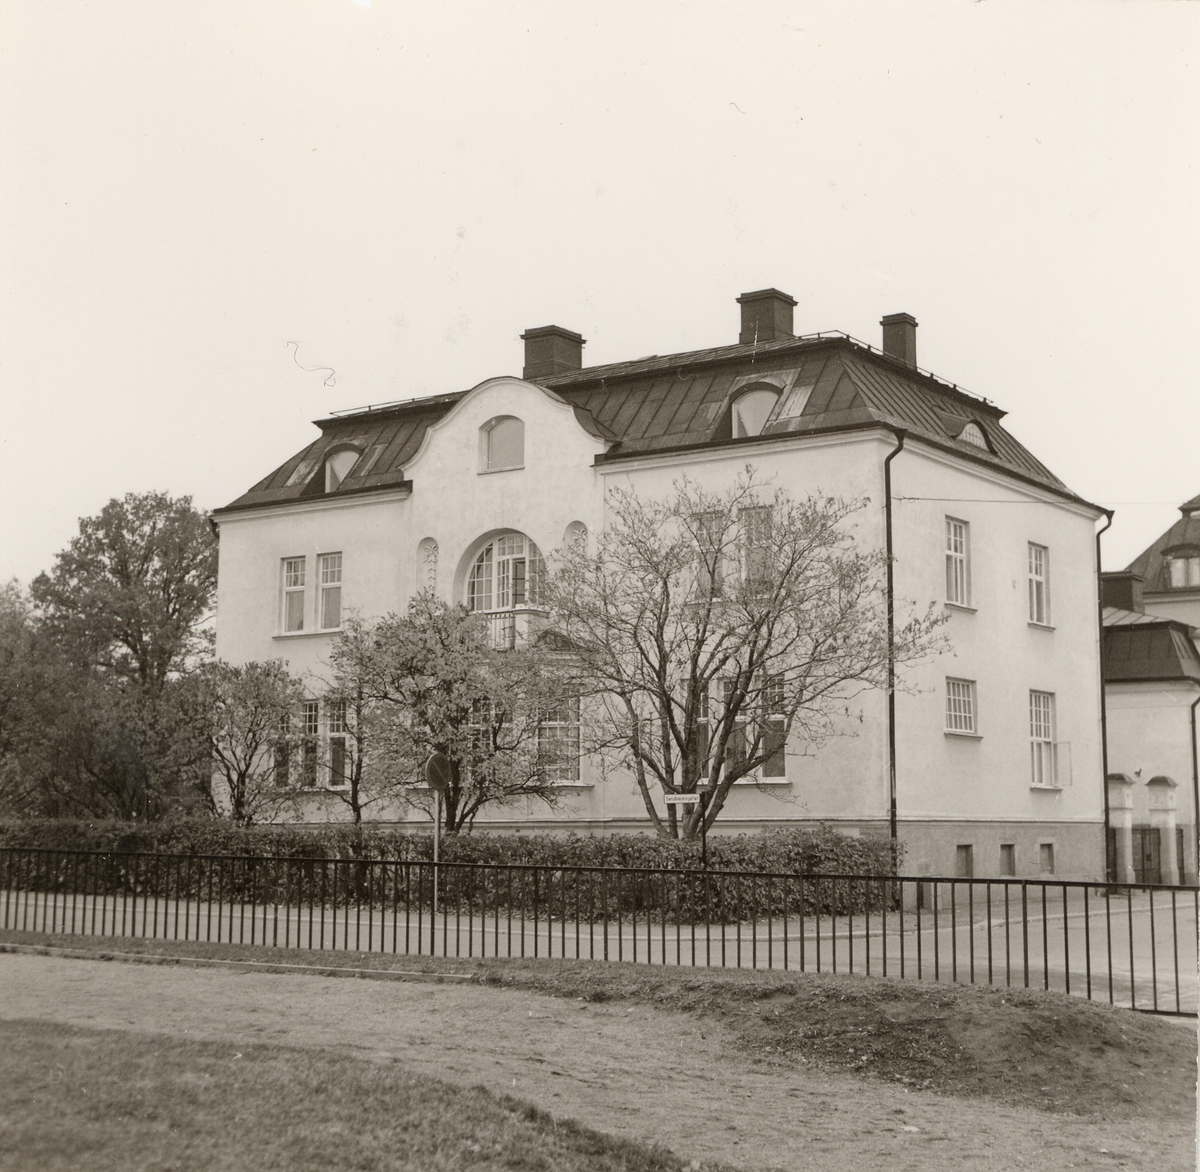 Orig. text: Linköping Klosterg. 68. Okt -71.

Vid korsningen med Sandbäcksgatan.
Grevellska villan byggdes 1902, arkitekt Sigurd Westholm, den revs när Hotell Ekoxen byggdes i början på 1970-talet.